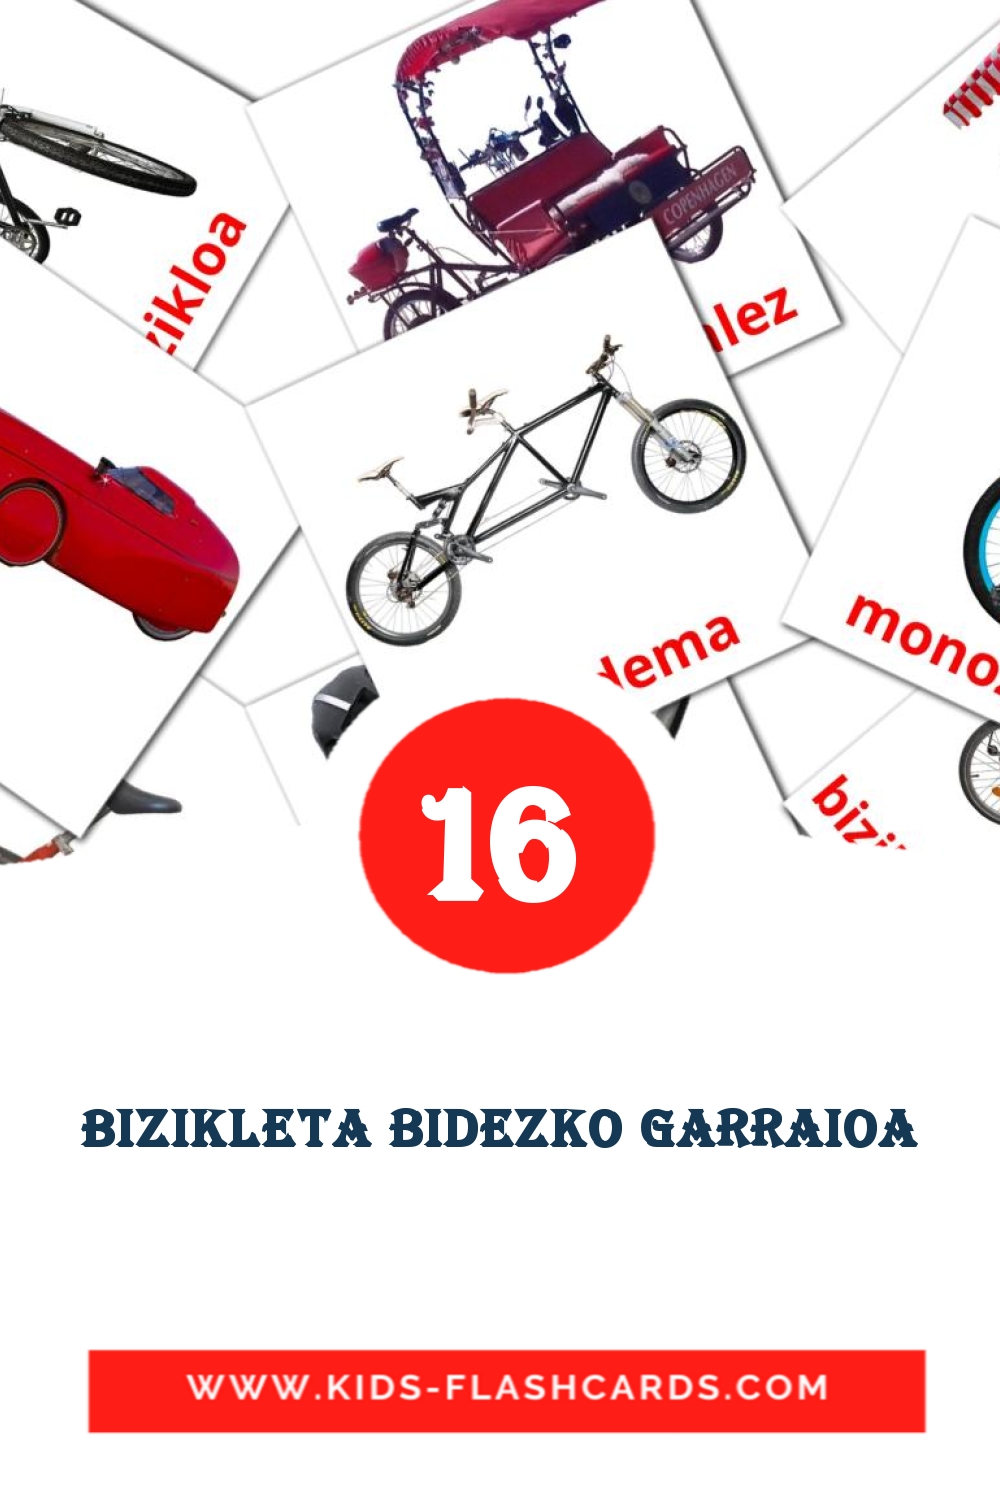 16 Cartões com Imagens de Bizikleta bidezko garraioa para Jardim de Infância em basco